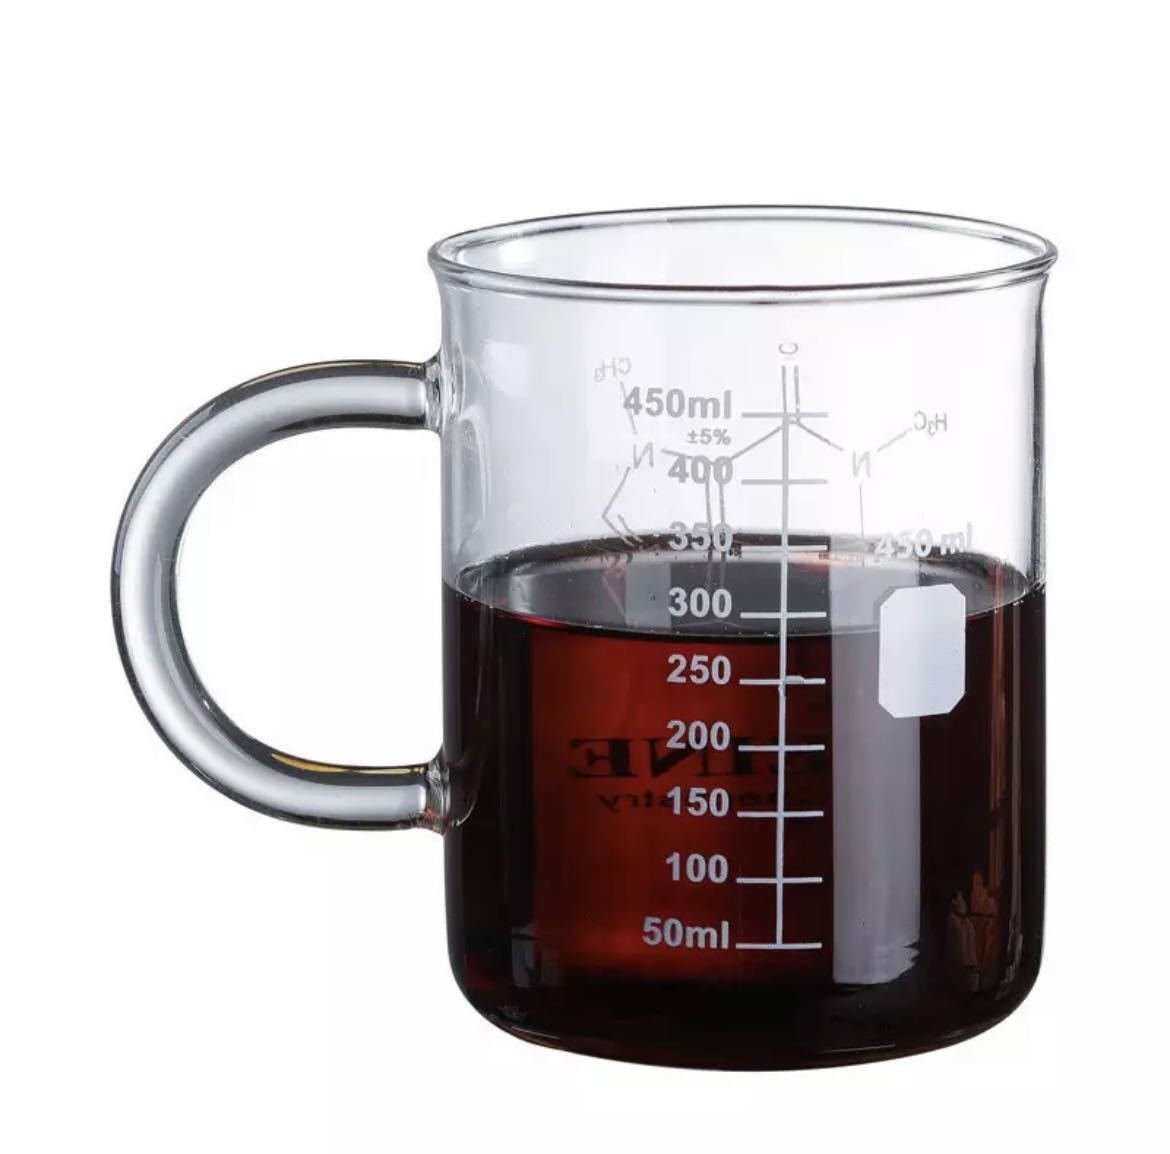 LHH569★450ml ビーカー型マグカップ 耐熱グラス 計量カップ スケールカップ ビーカー マグカップ カップ コップ コーヒーカップ ミルク_画像3